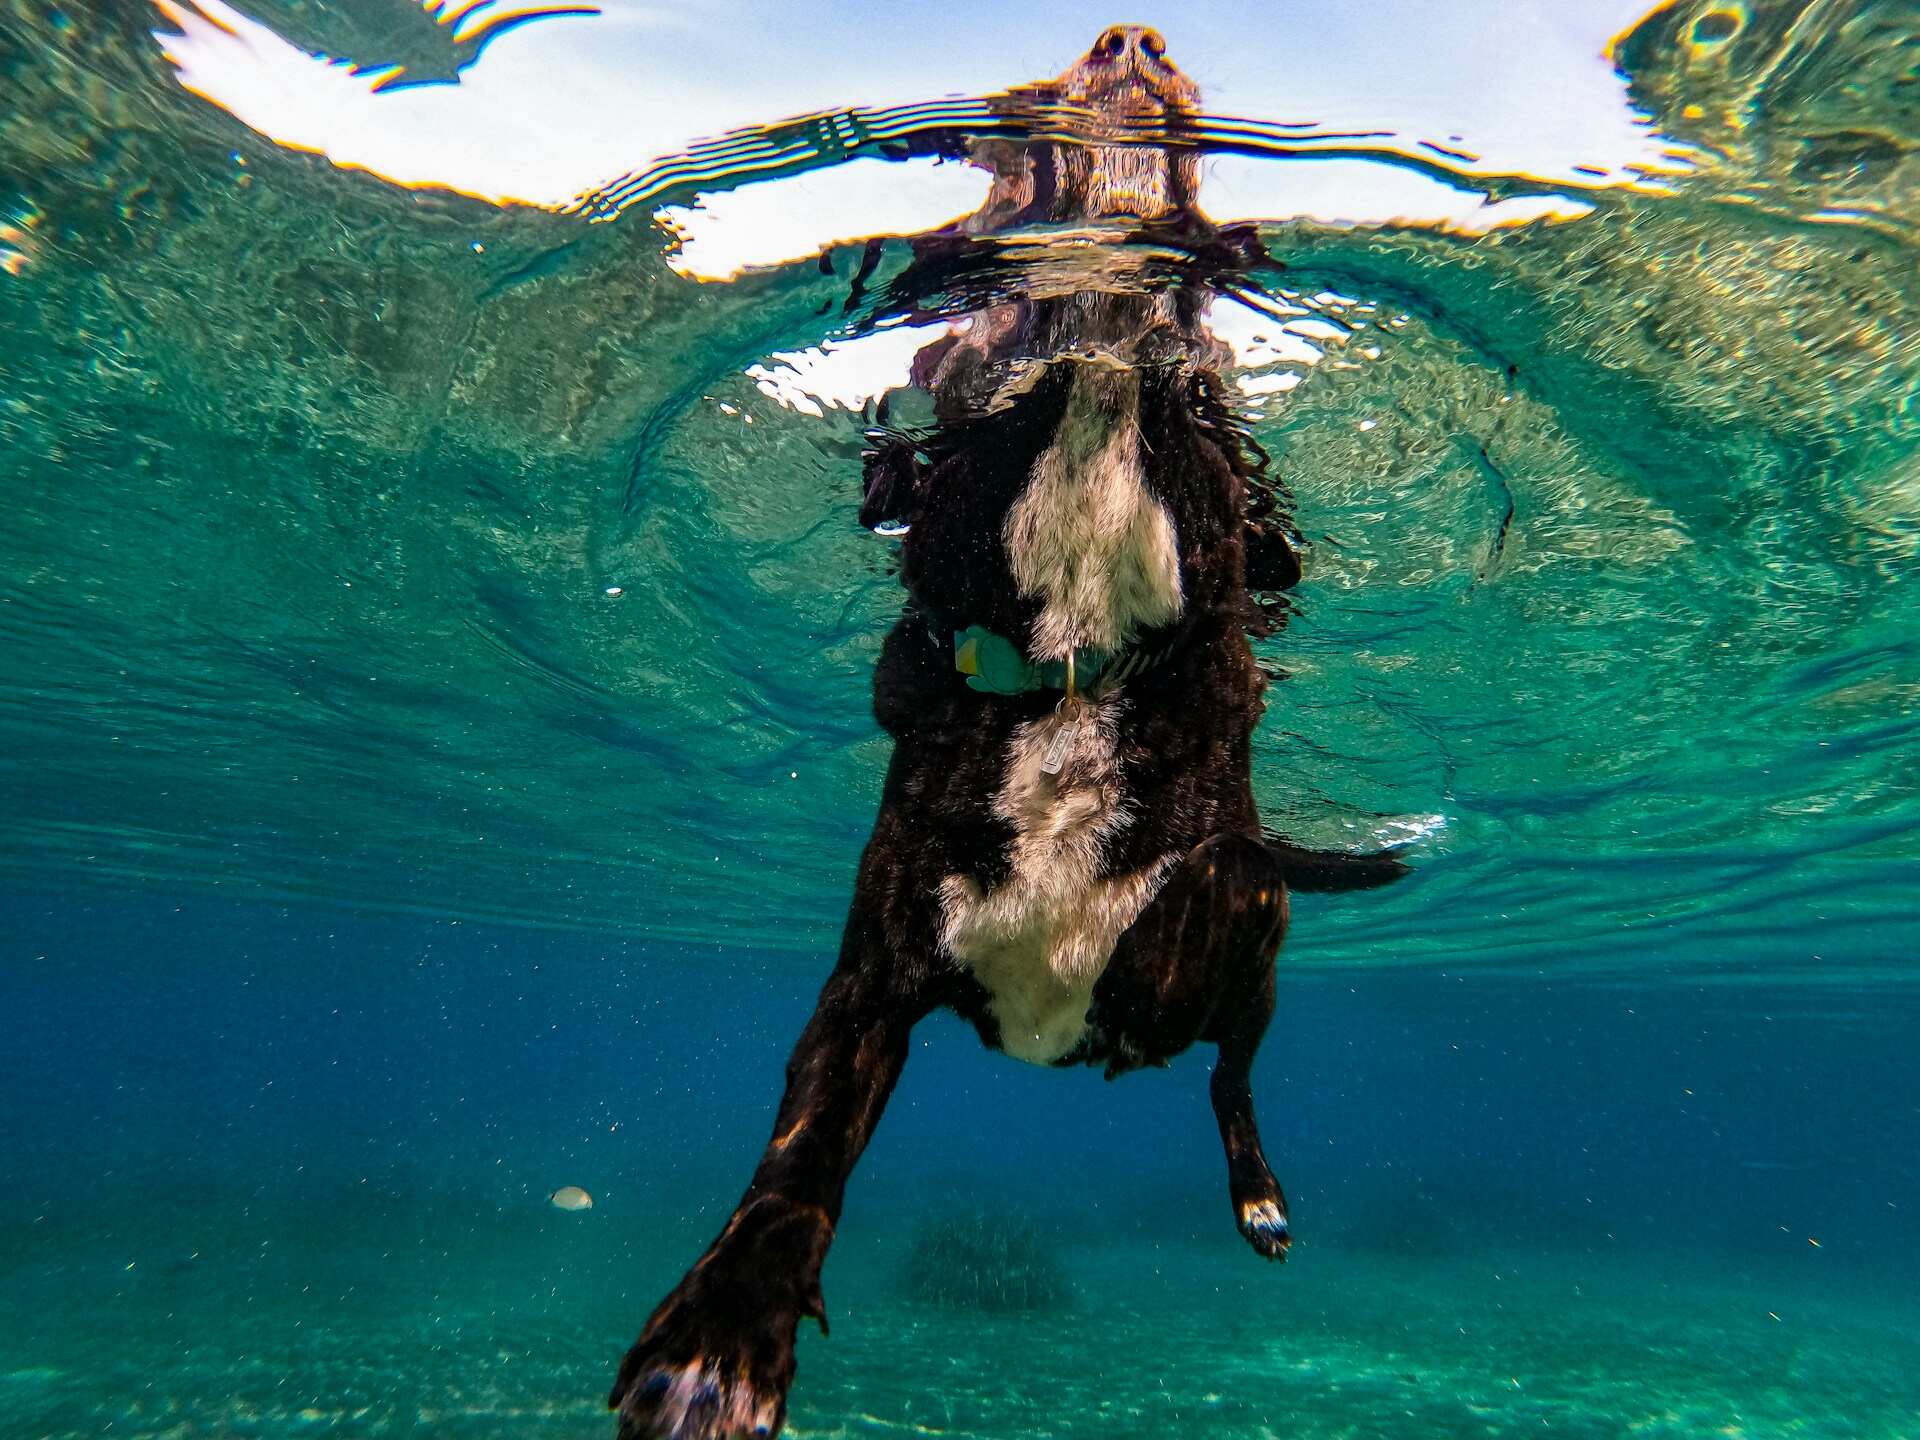 bilde tatt under vann av en hund som svømmer i sjøen